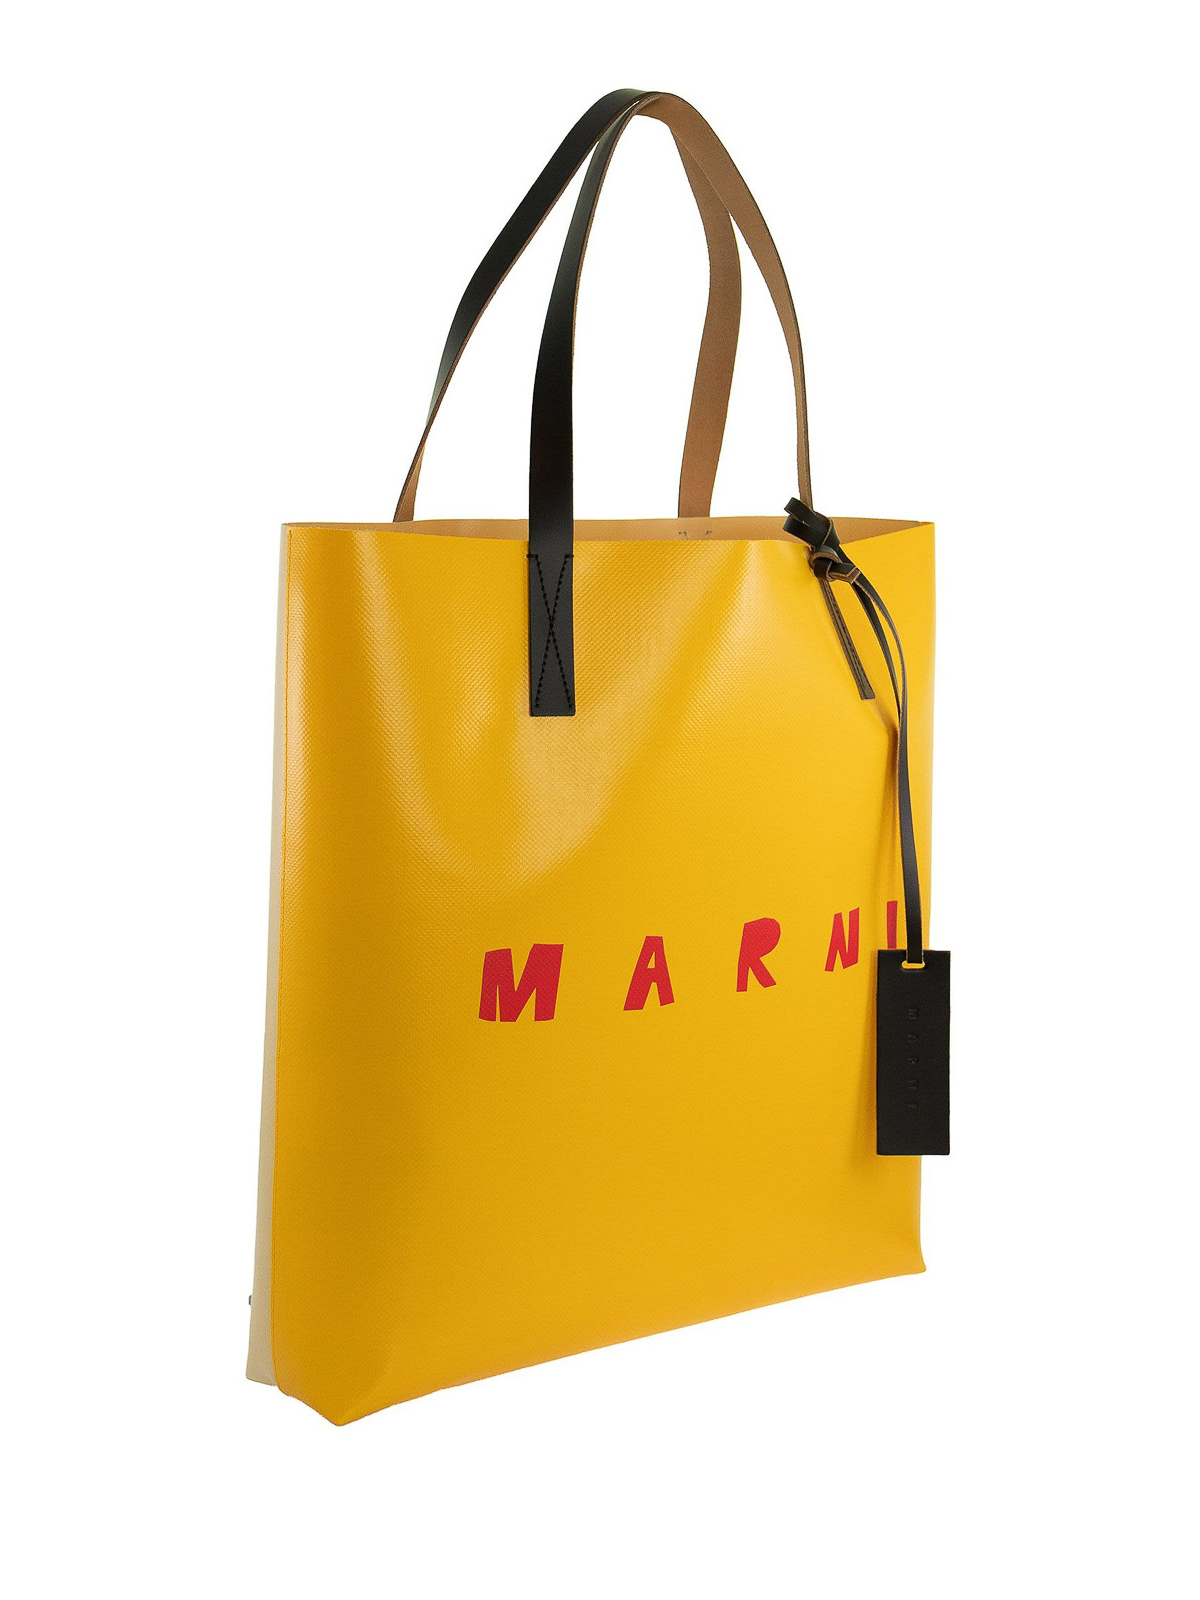 Totes bags Marni - Logo print two-tone pvc tote - SHMPQ10A06P3660Z2N31